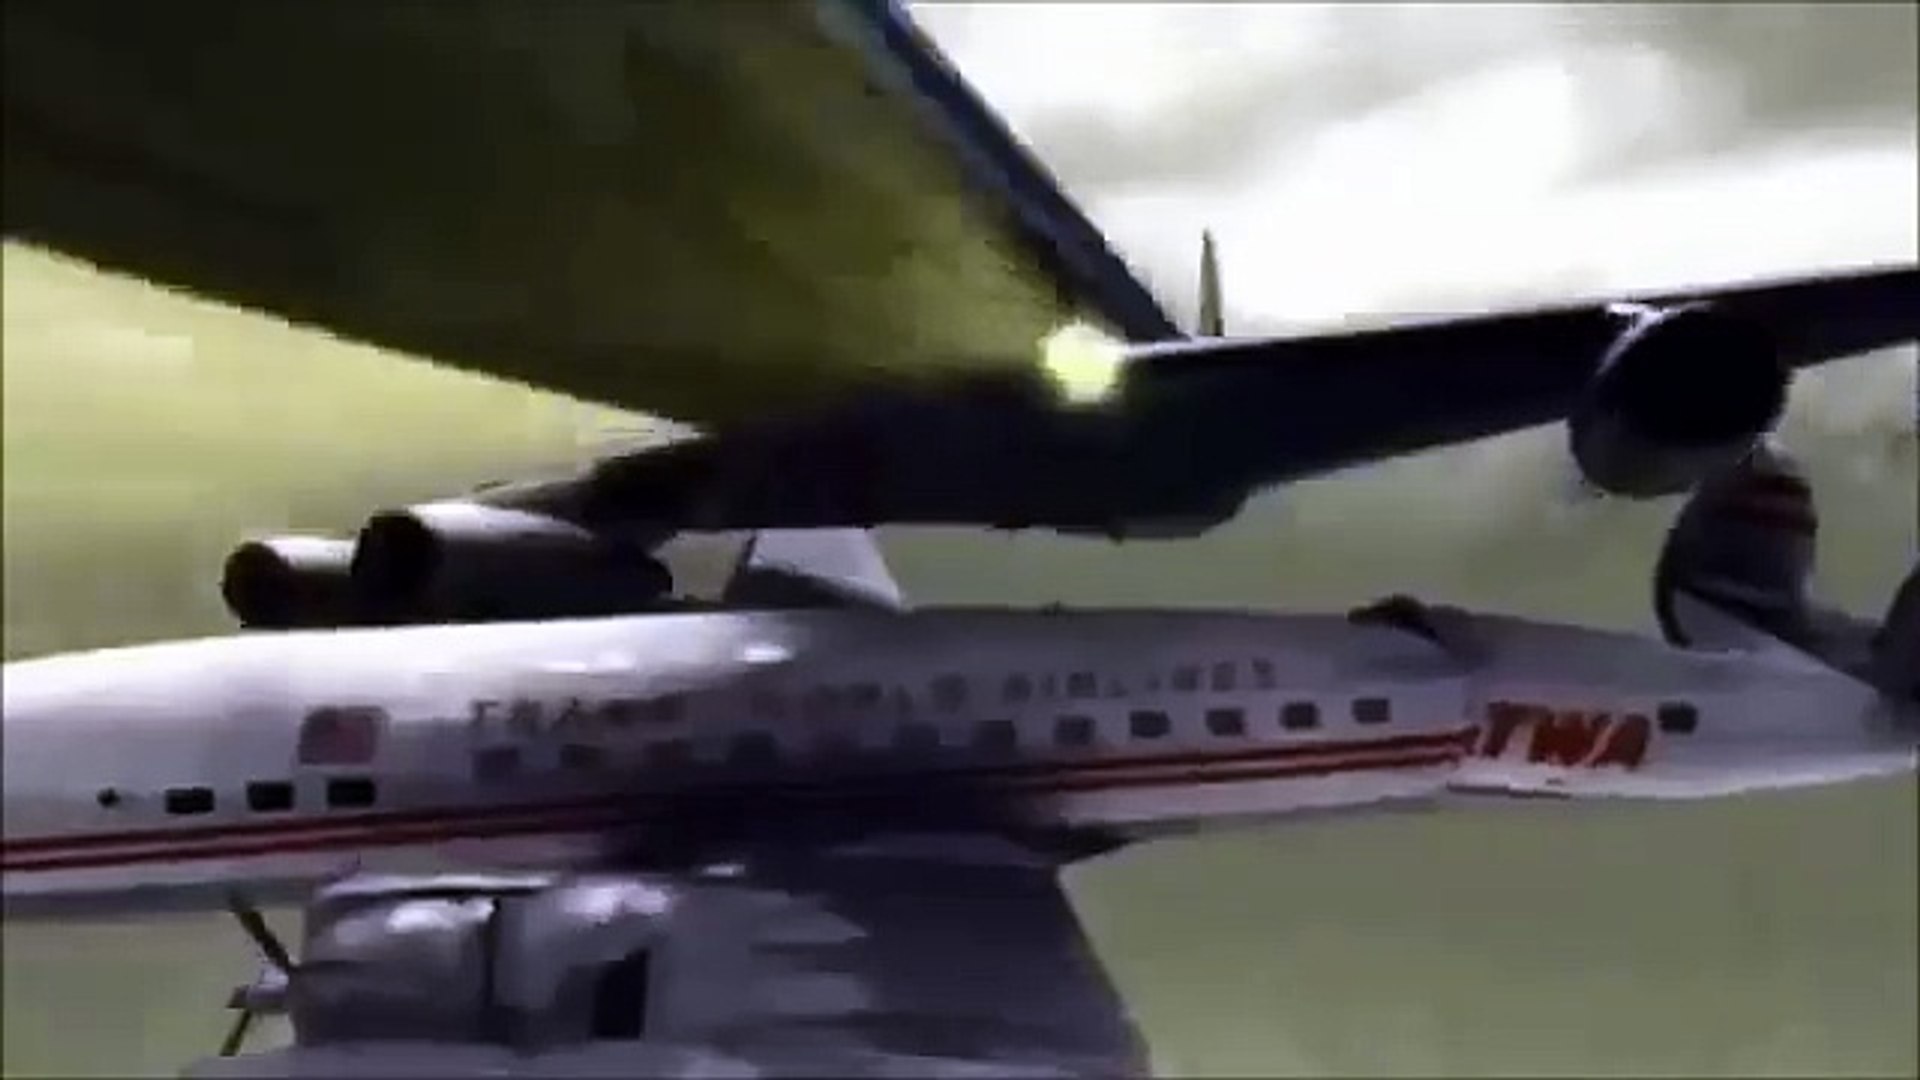 twa flight 266